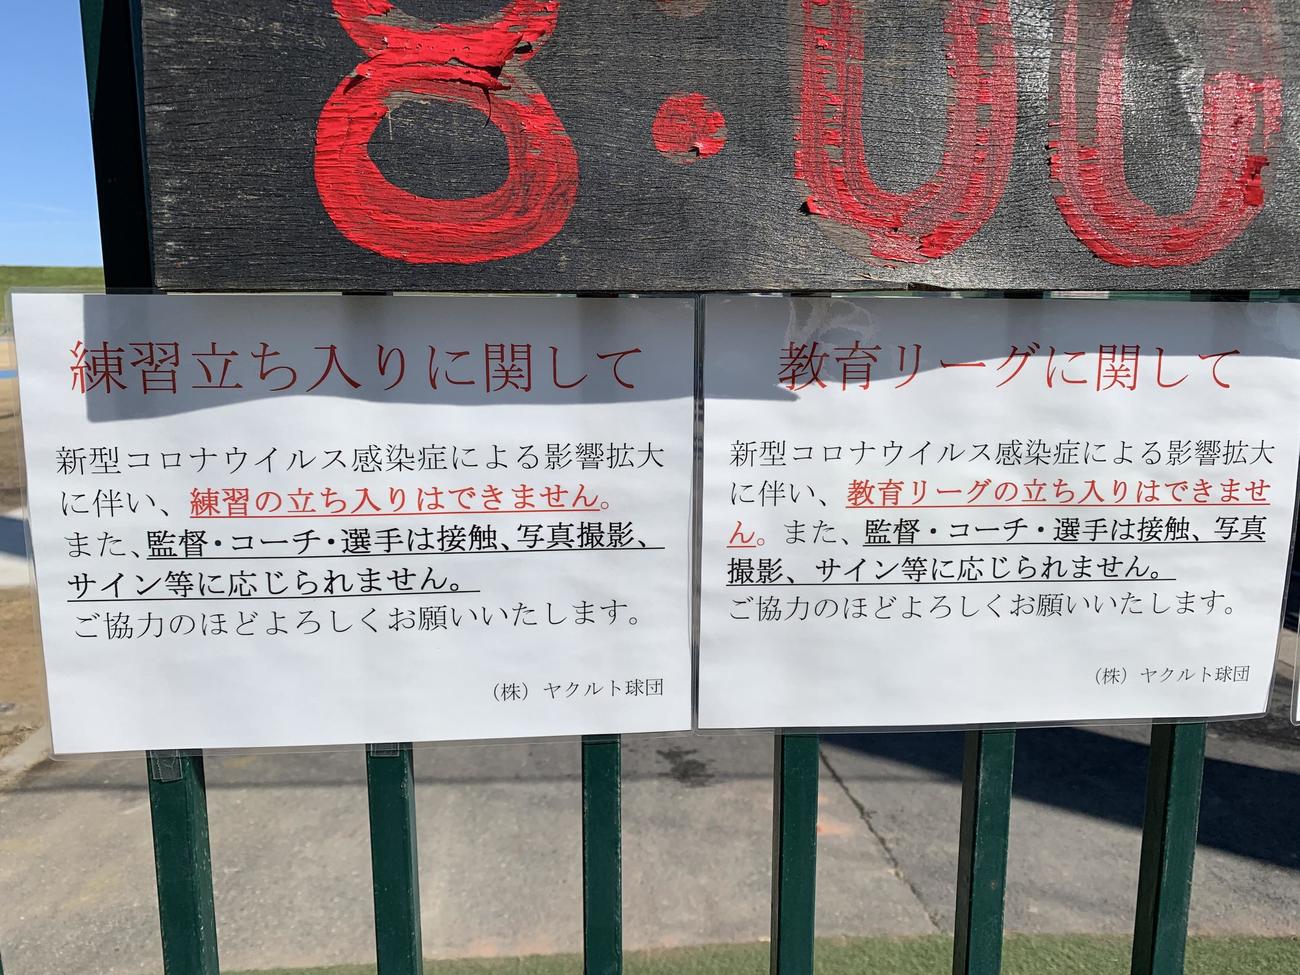 新型コロナウイルス対策として、教育リーグだけでなく練習もファンの立ち入りを禁止したヤクルト戸田球場の張り紙